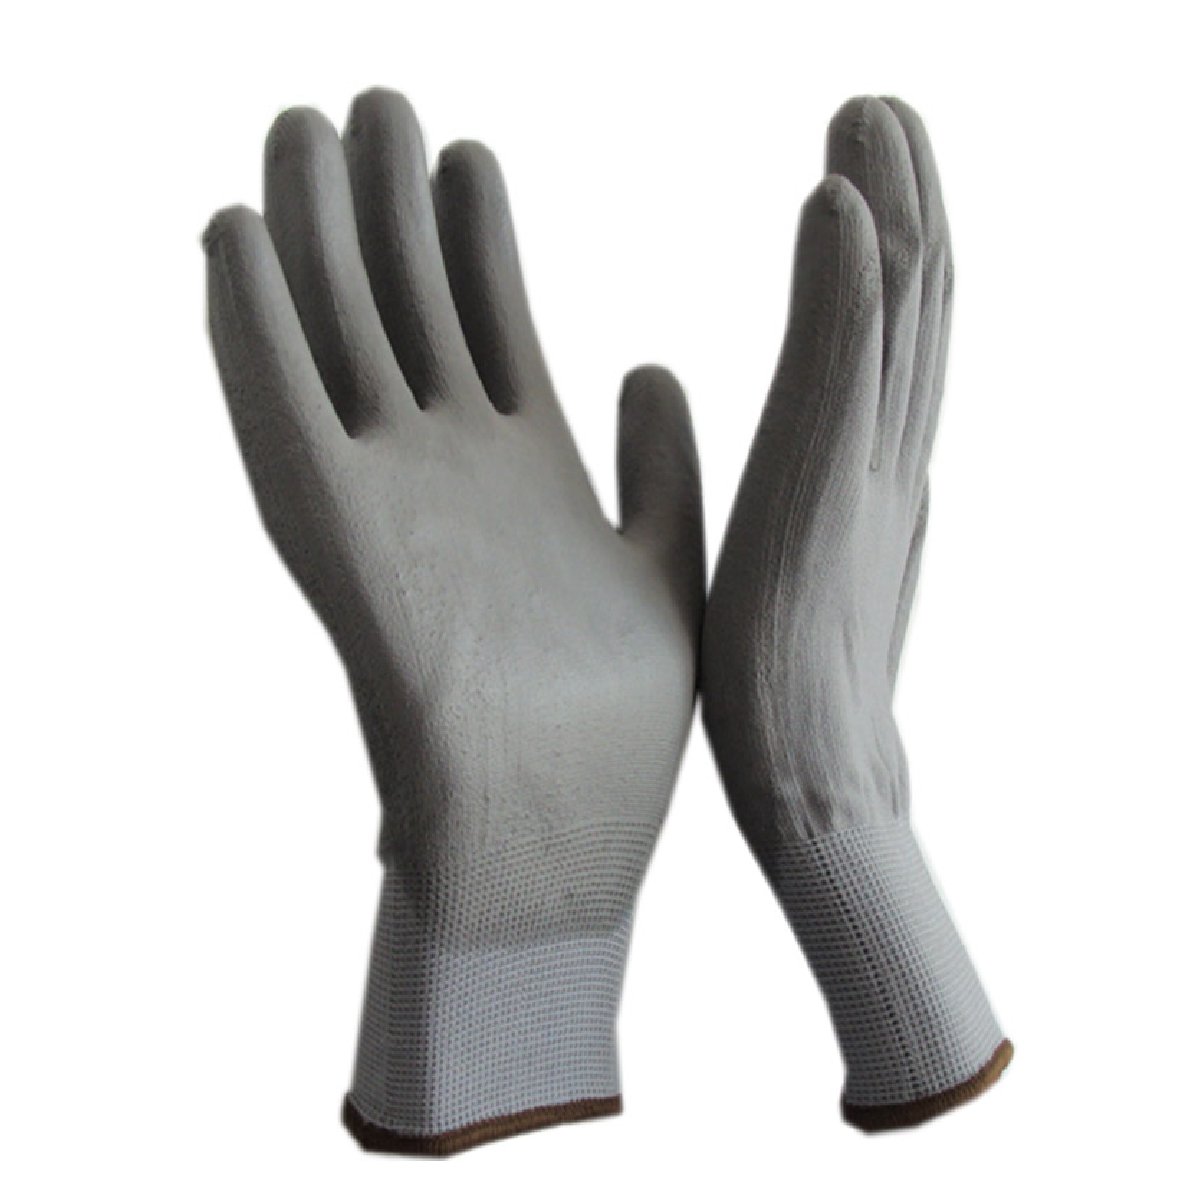 Перчатки рабочие с полиуретановым покрытием PU2, размер L (106735)Купить